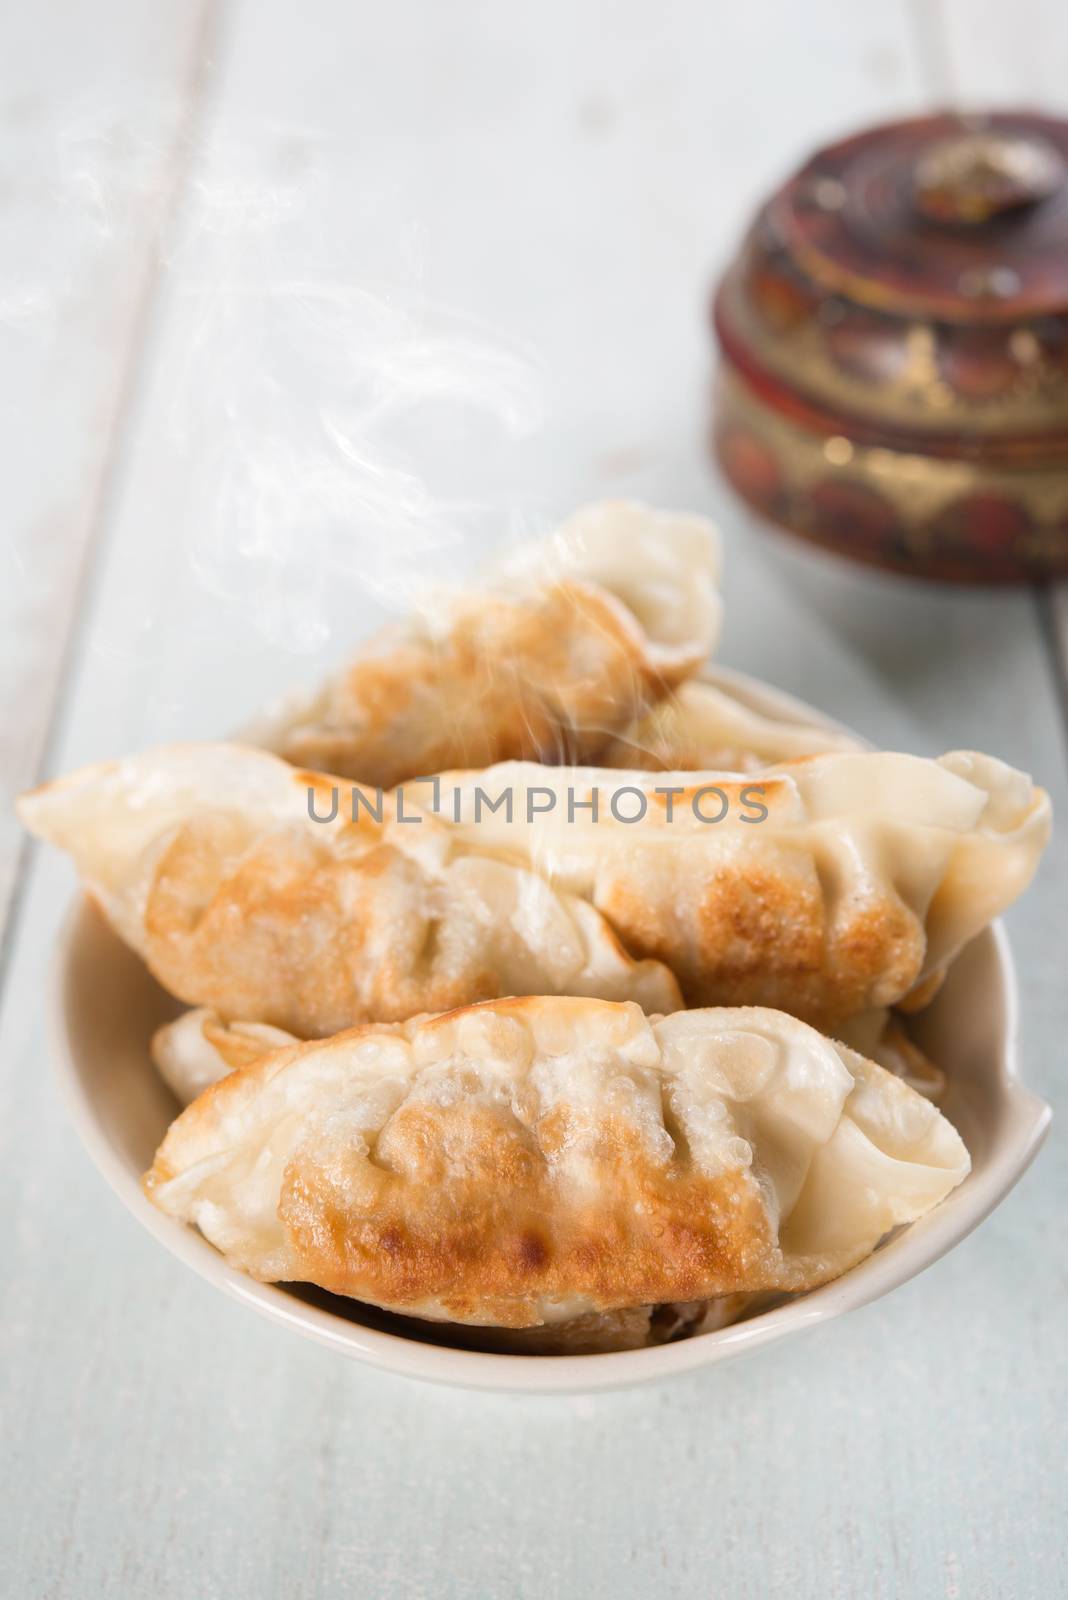 Asian gourmet pan fried dumplings by szefei